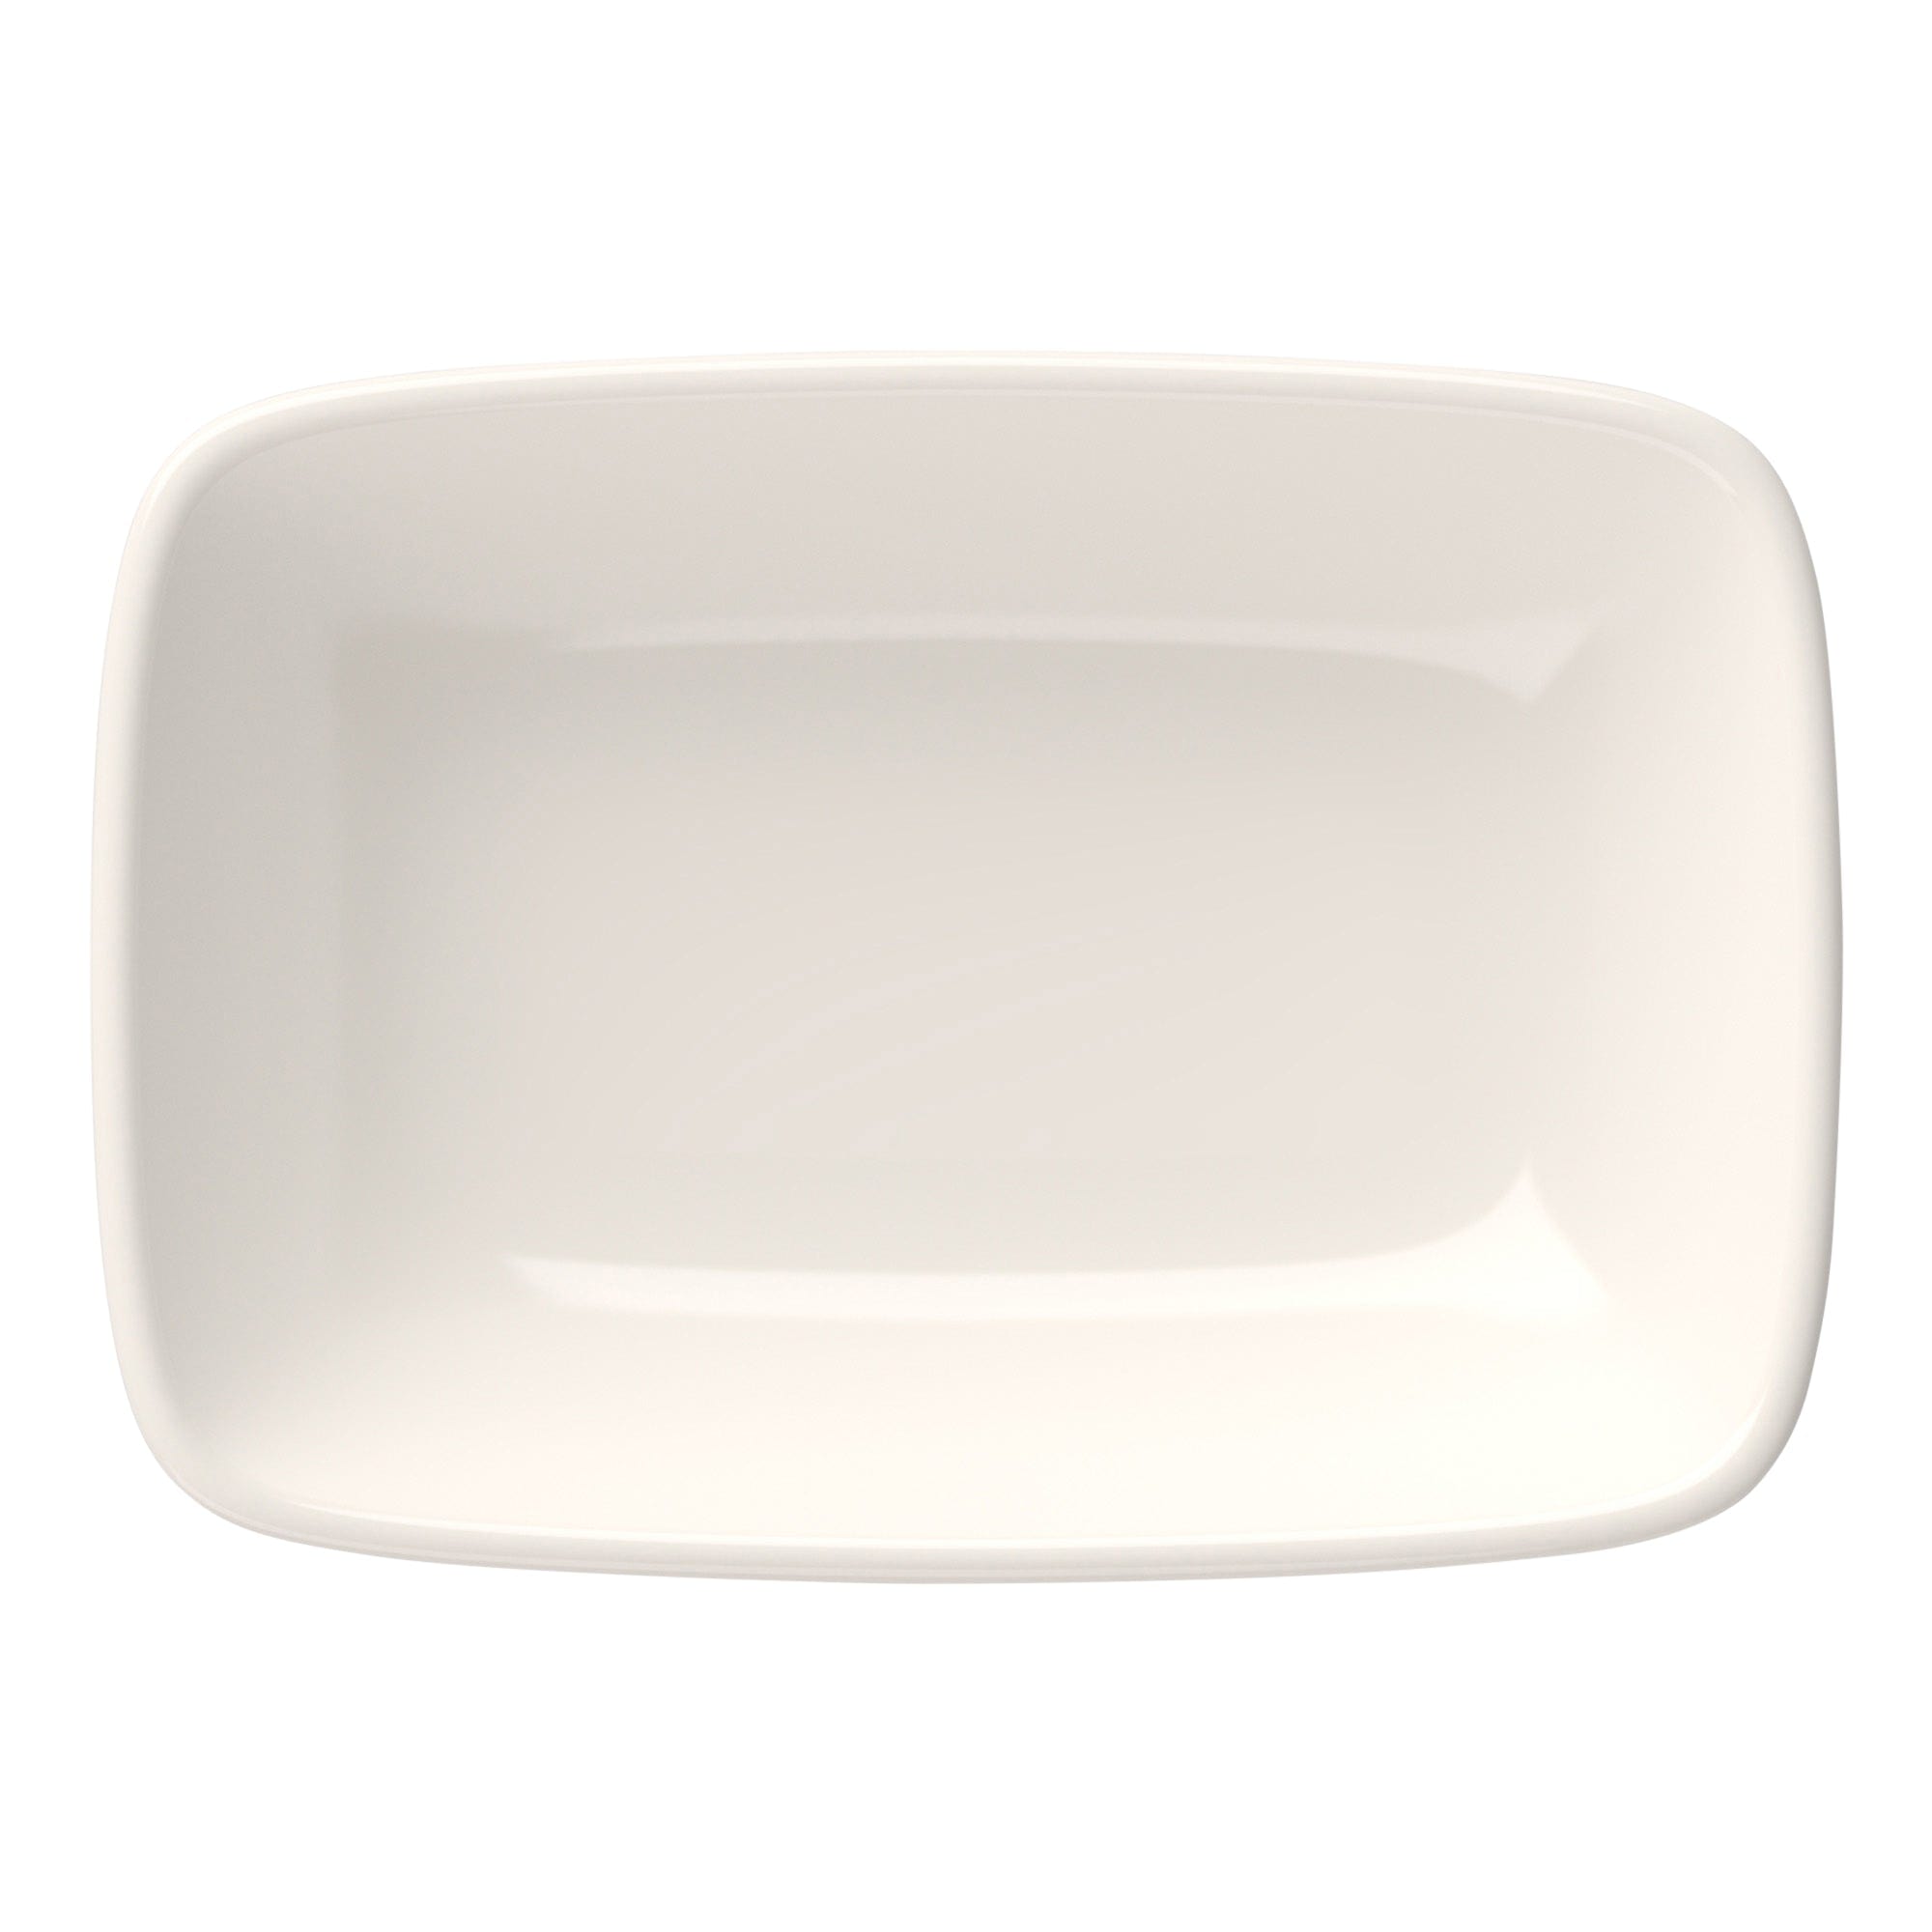 Quadro Porcelain Rectangular Platter 4.3"x2.8"